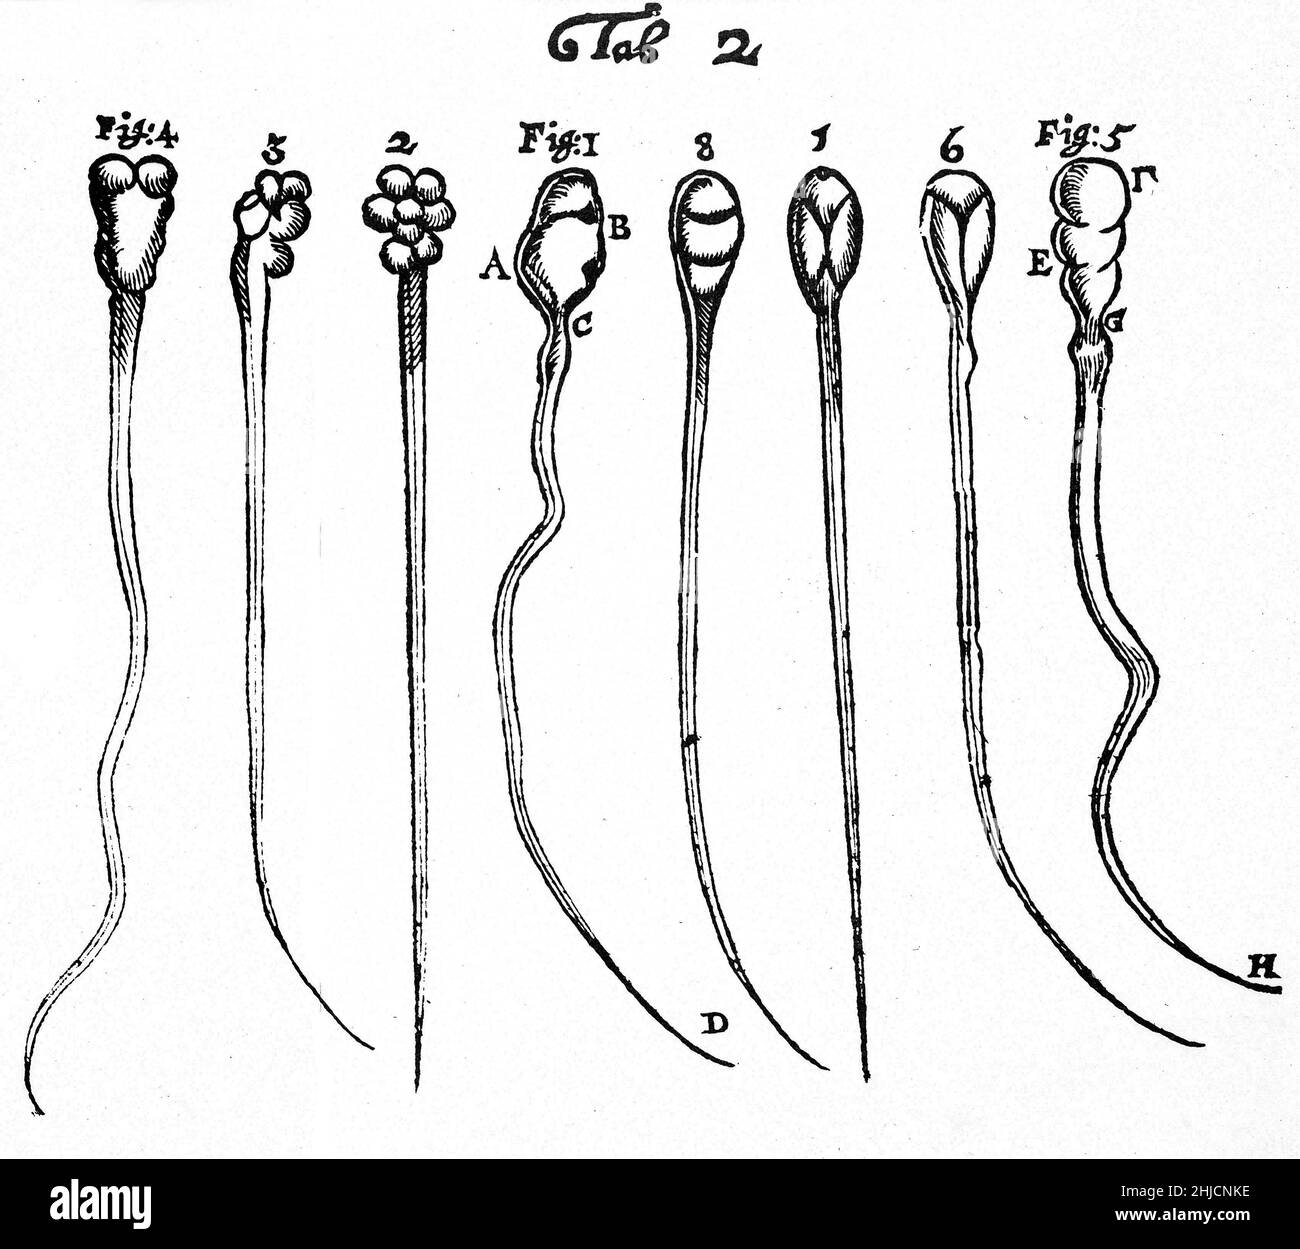 Taglio di legno che mostra spermatozoi di coniglio (fichi. 1-4) e cane (figg. 5-8), osservato e disegnato da Anthony van Leeuwenhoek, 1677. Leeuwenhoek (1632-1723) è stato uno scienziato olandese, ora considerato il primo microbiologo. È noto soprattutto per il suo lavoro sul miglioramento del microscopio e per il suo contributo alla creazione della microbiologia. Foto Stock